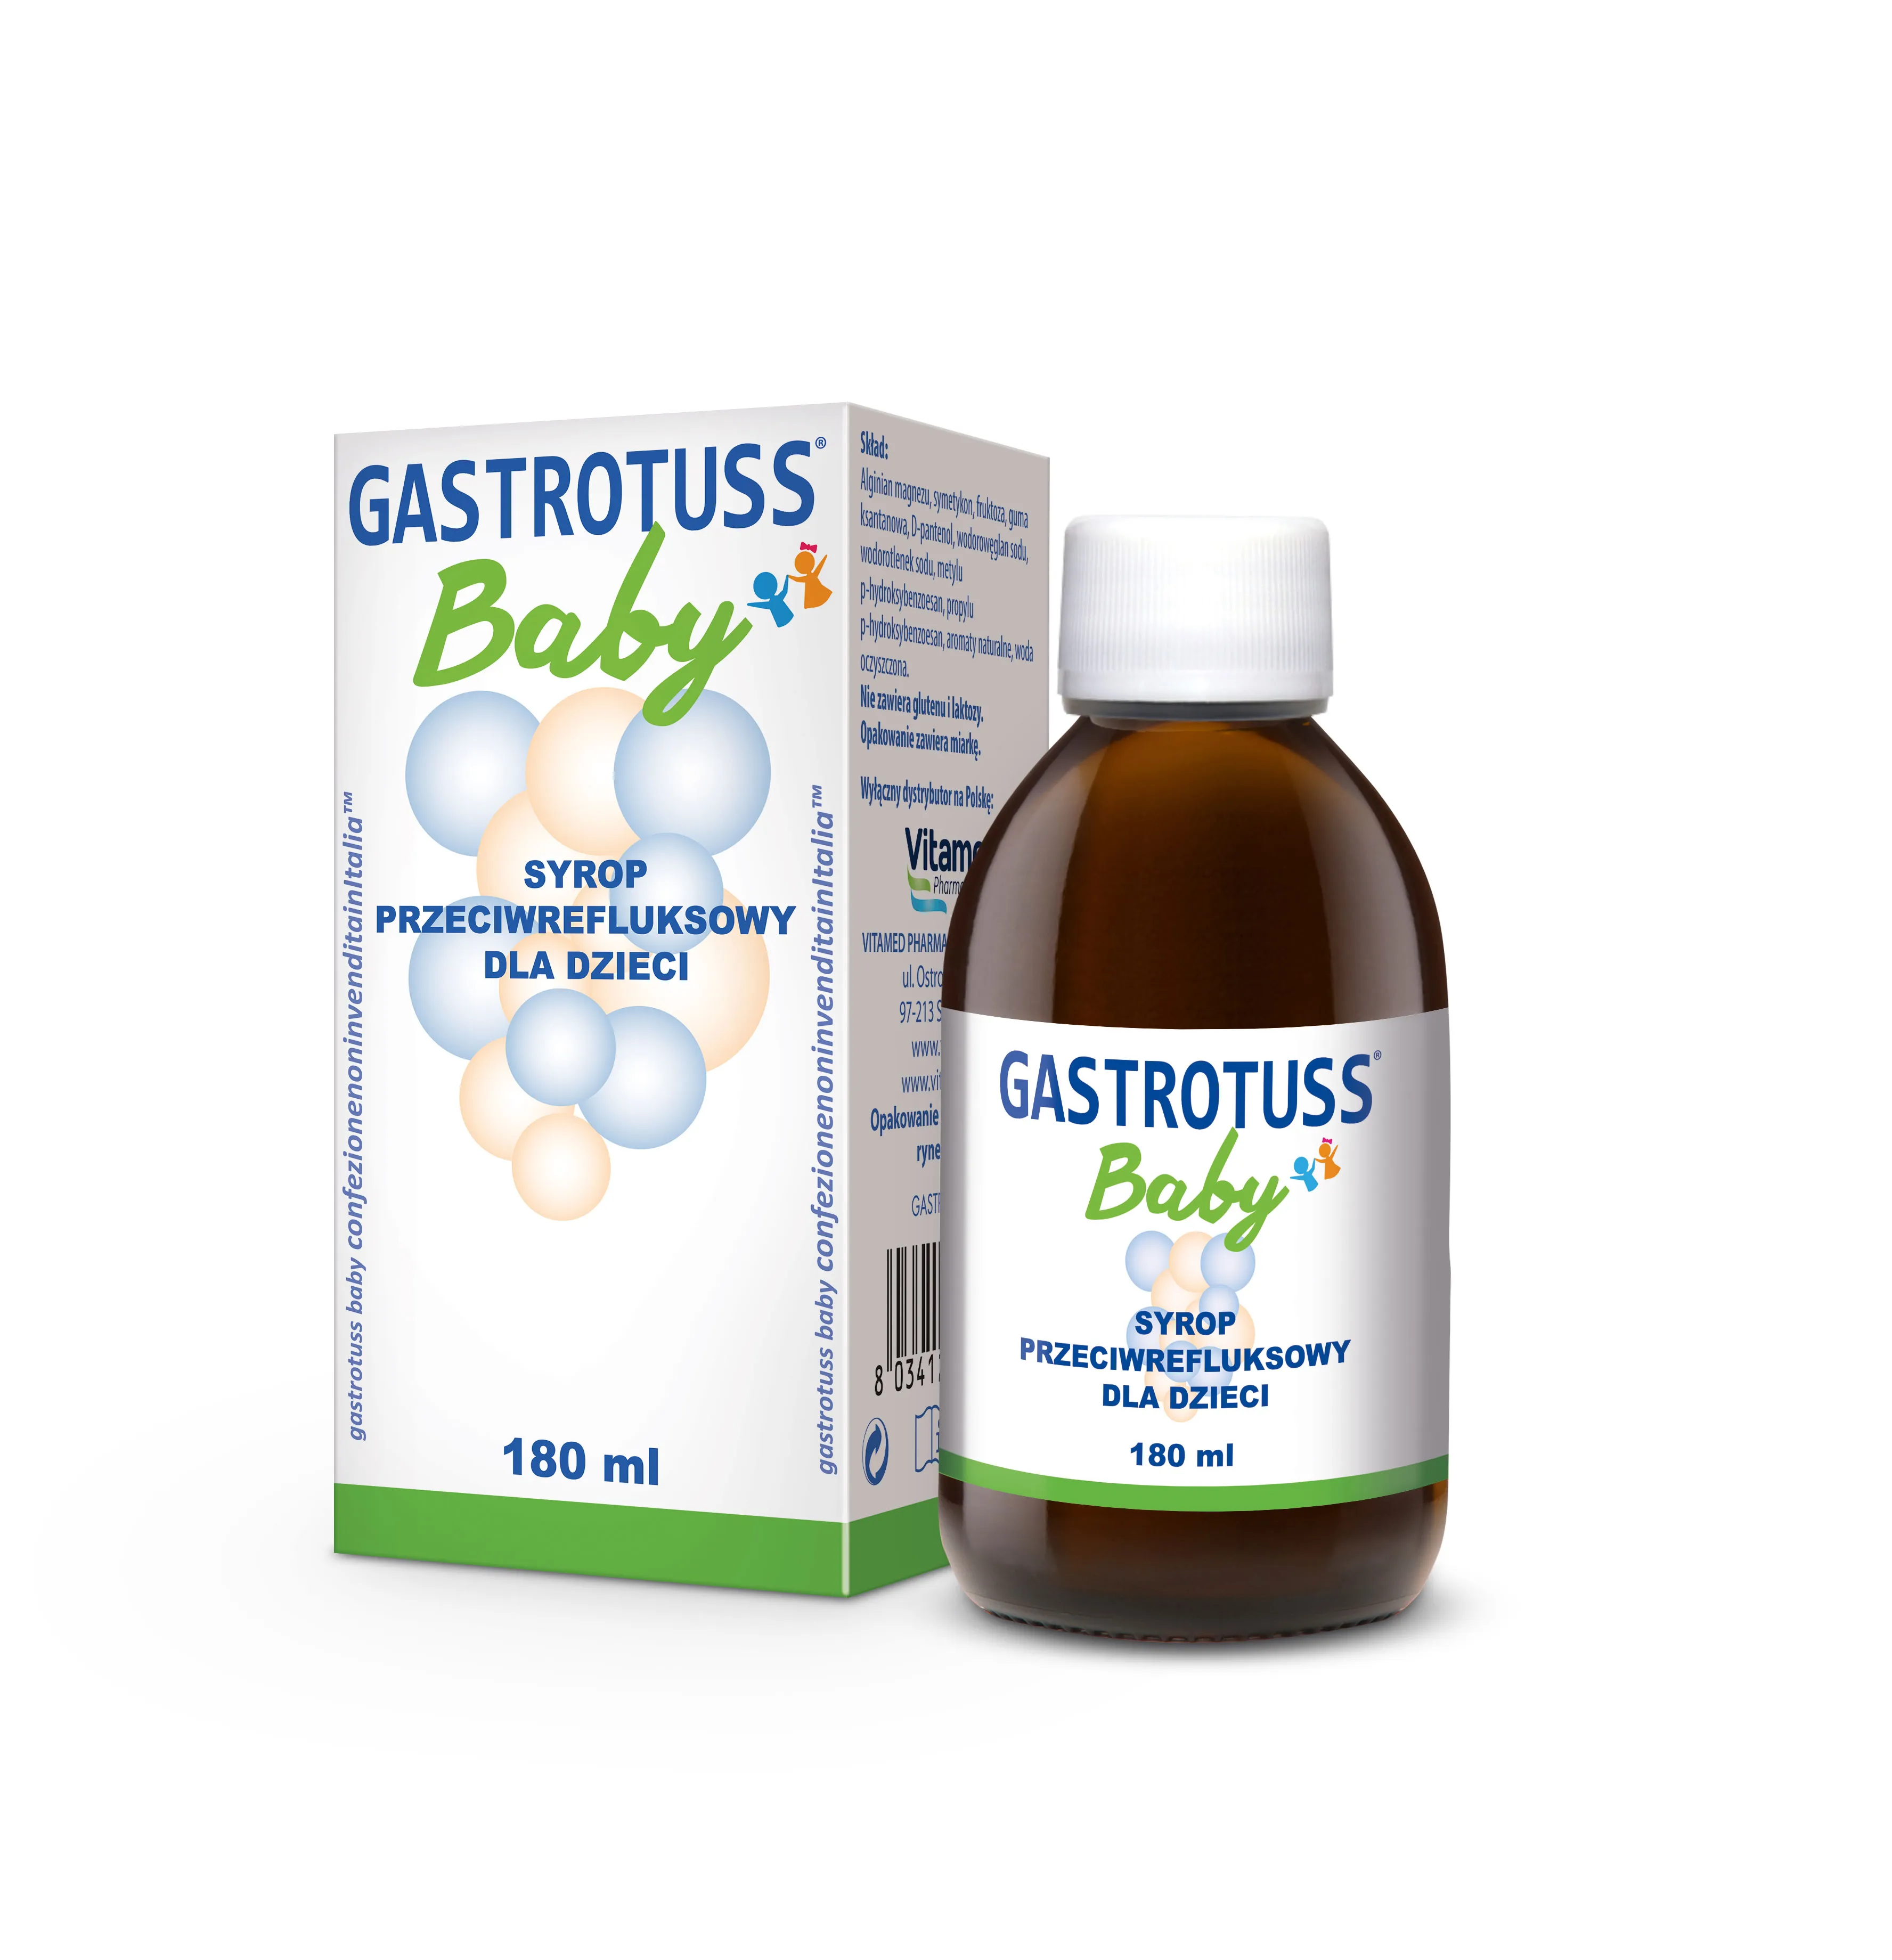 Gastrotuss baby, syrop przeciwrefluksowy dla dzieci, 180 ml